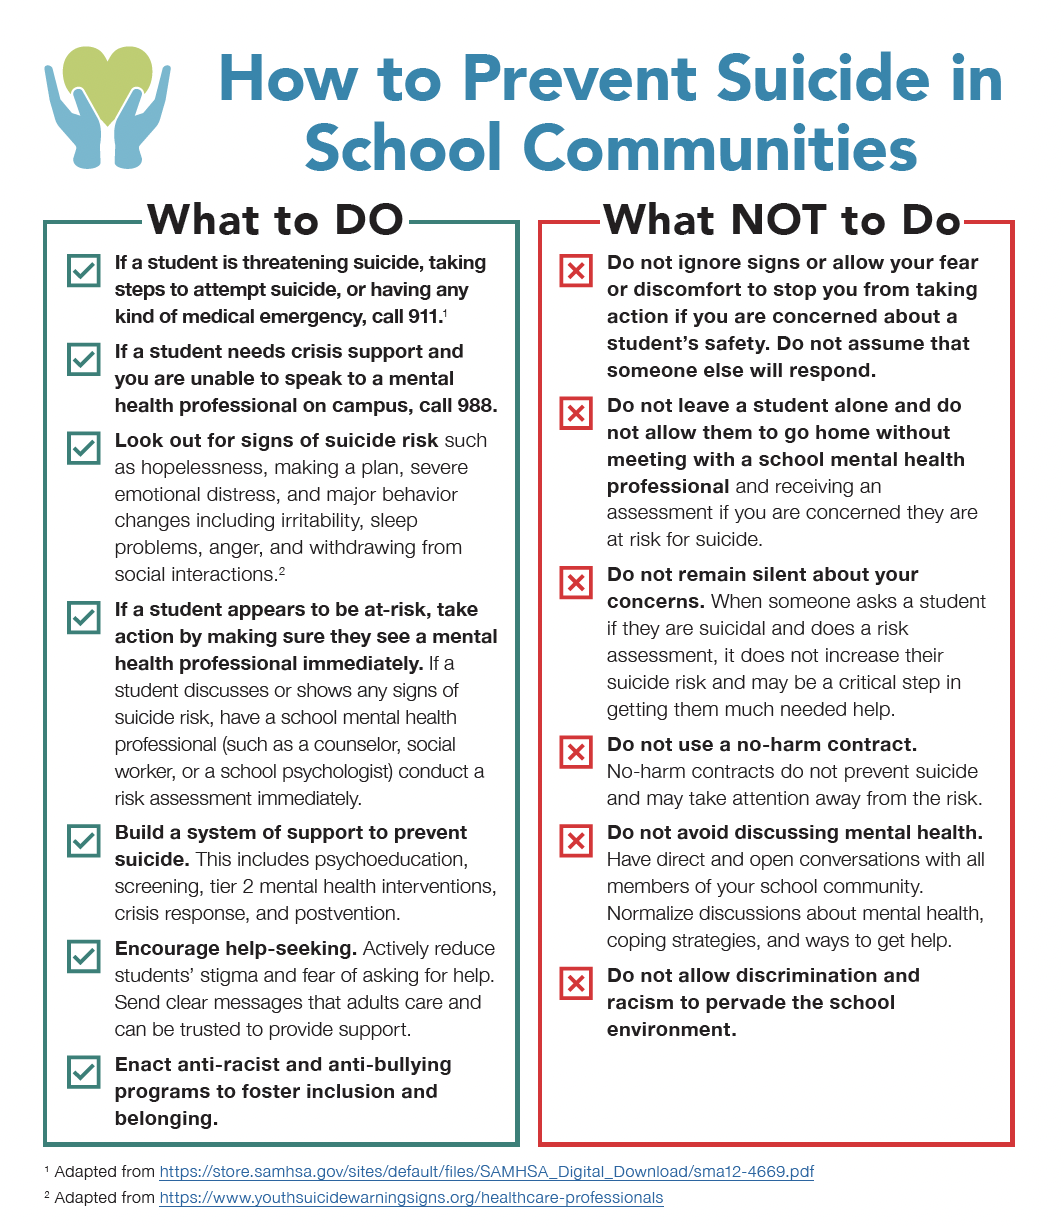 How to Prevent Suicide in School Communities